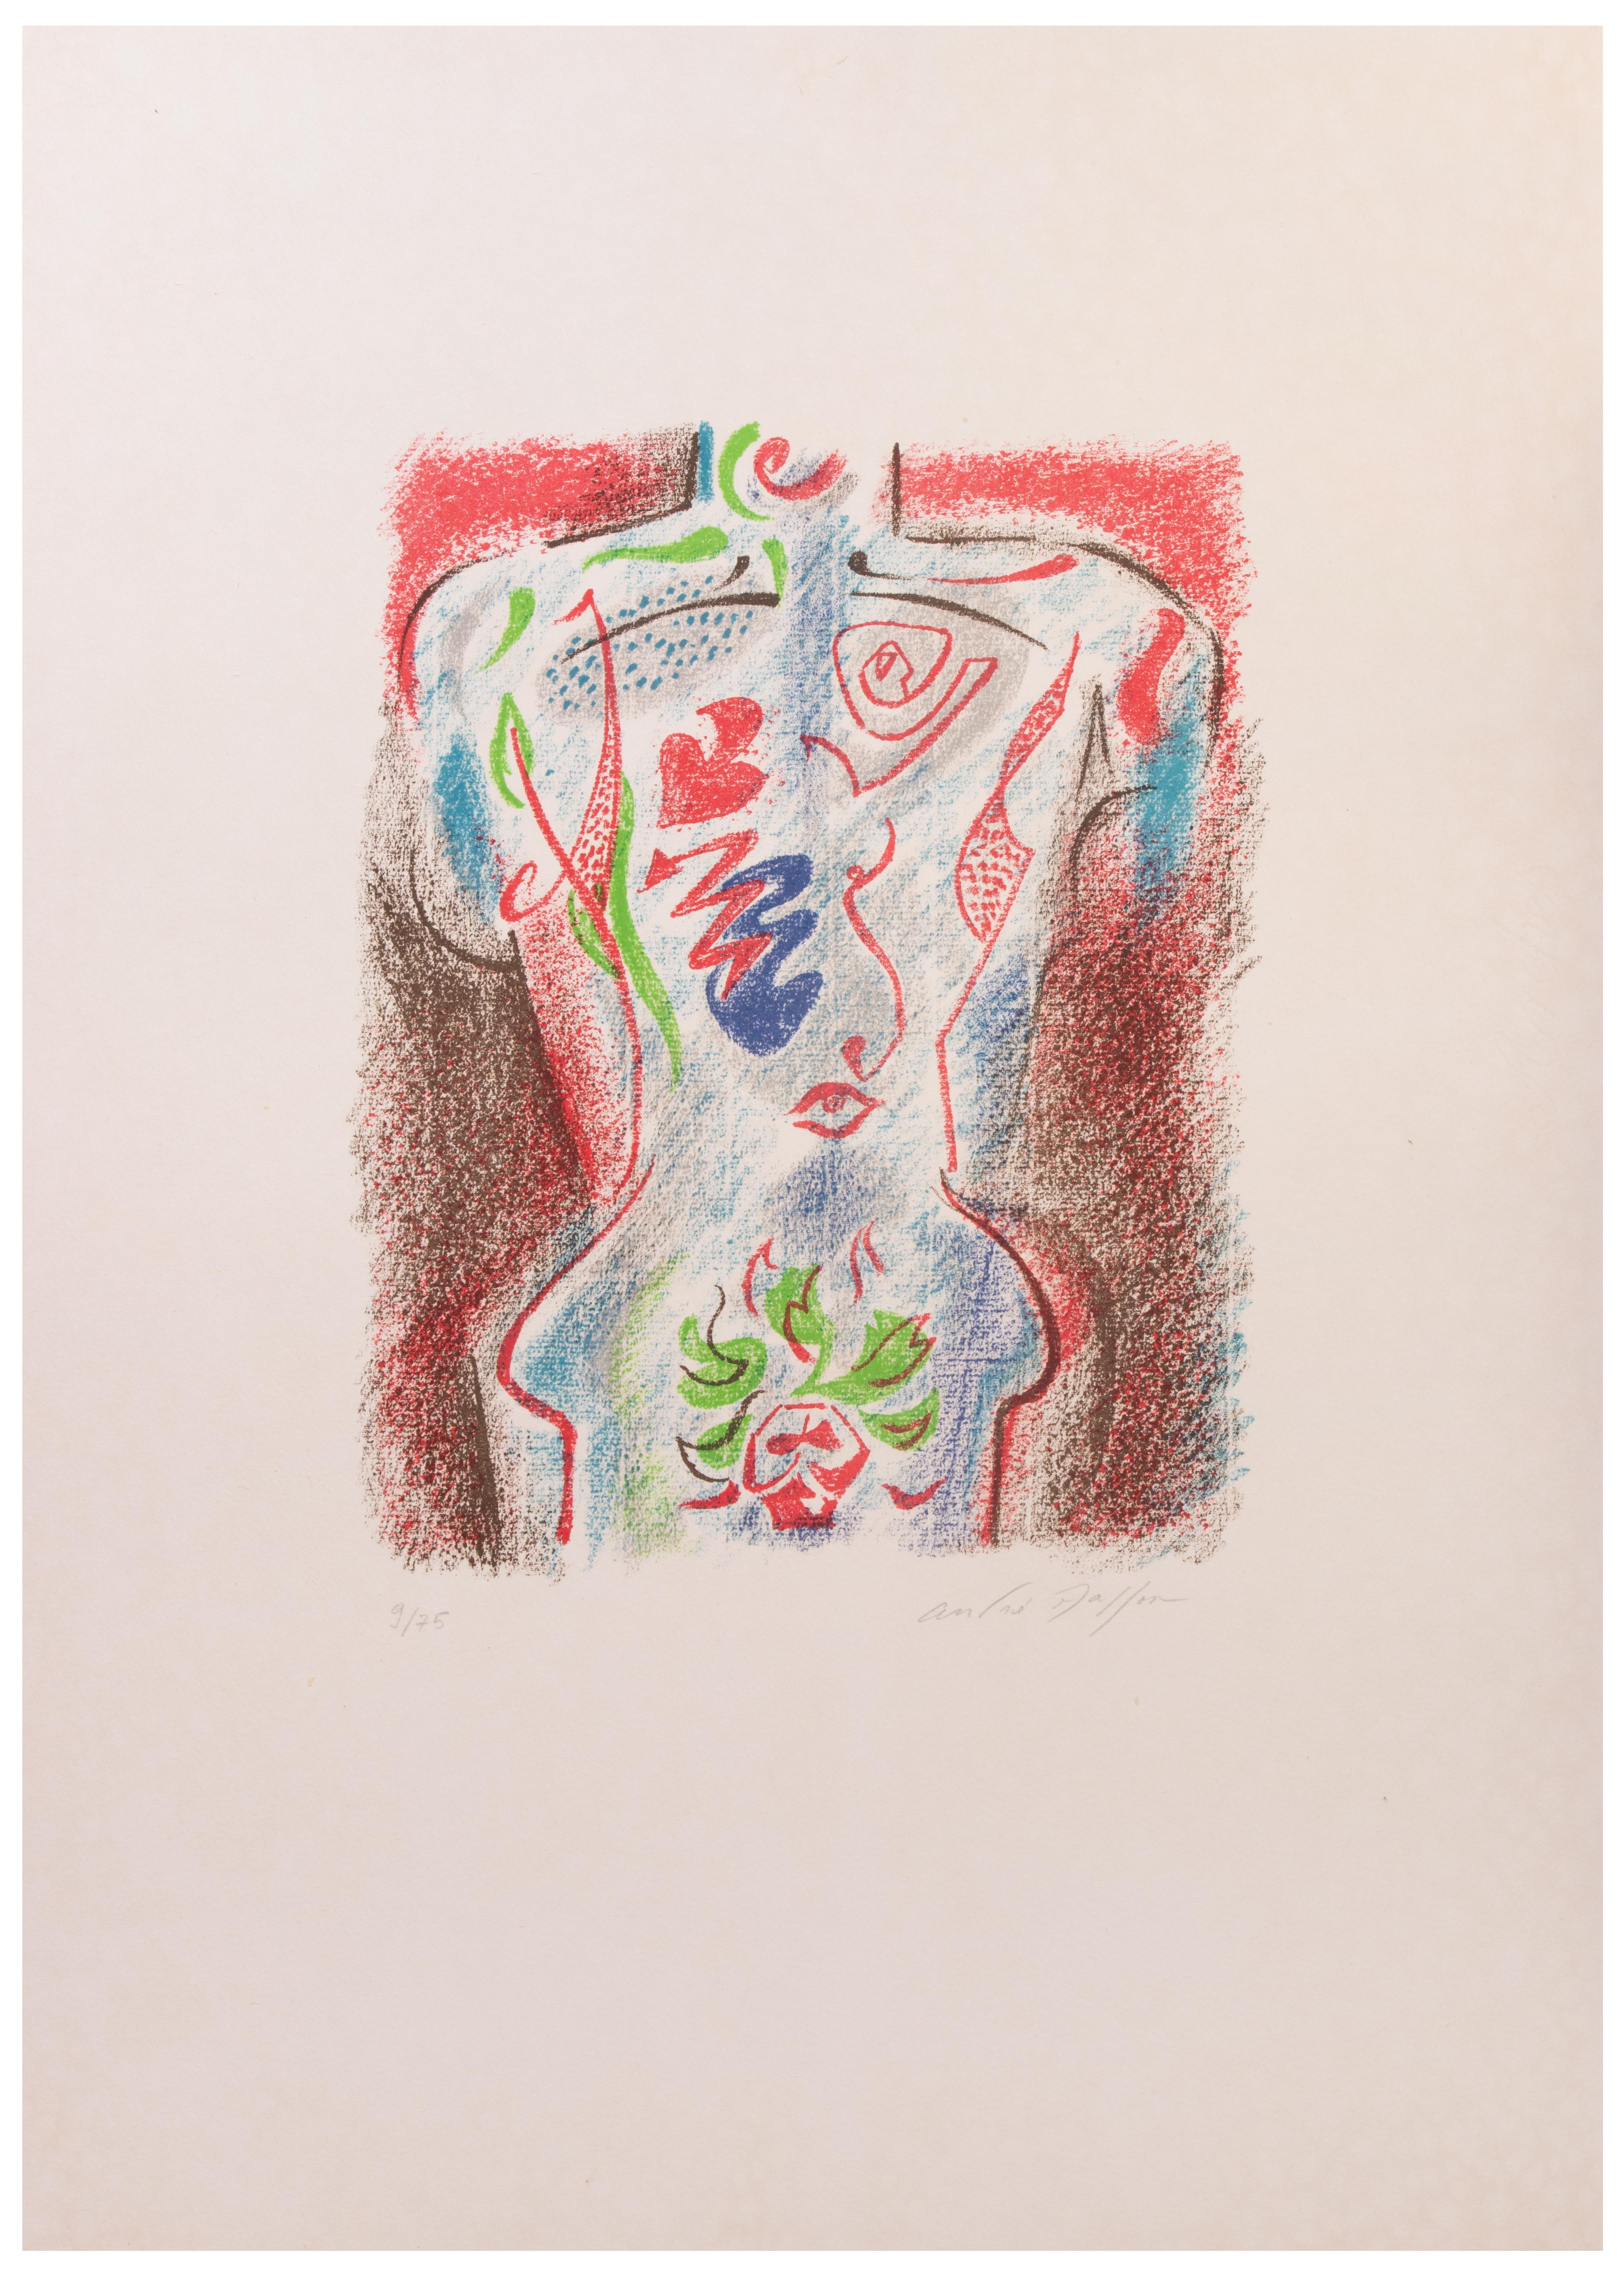 Diese Lithographie ist handsigniert und nummeriert. Auflage: 75 Exemplare.

André Masson (1896-1987) war ein französischer Maler, dessen Stil vom Kubismus und Surrealismus beeinflusst war. Nach Reisen durch Deutschland und Holland schloss er sich